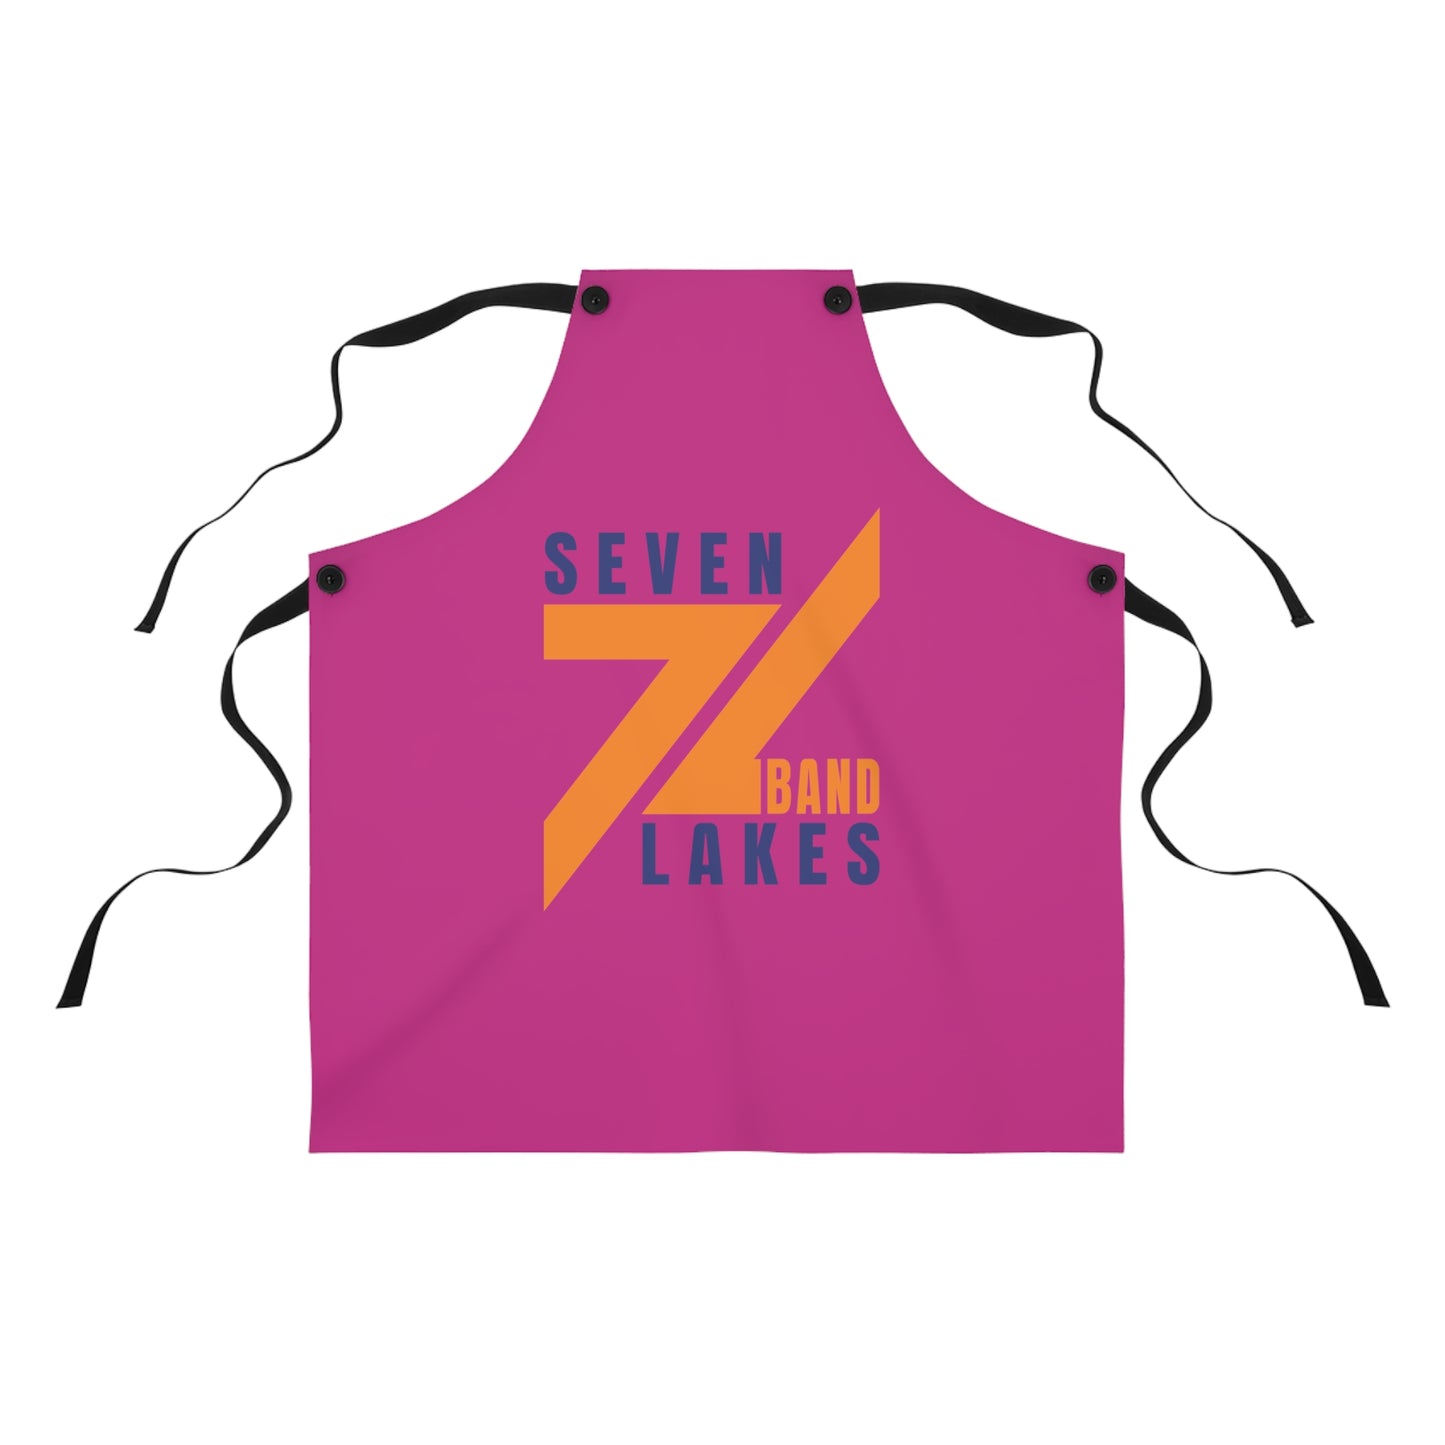 Seven Lakes Band - Apron (AOP) - Pink